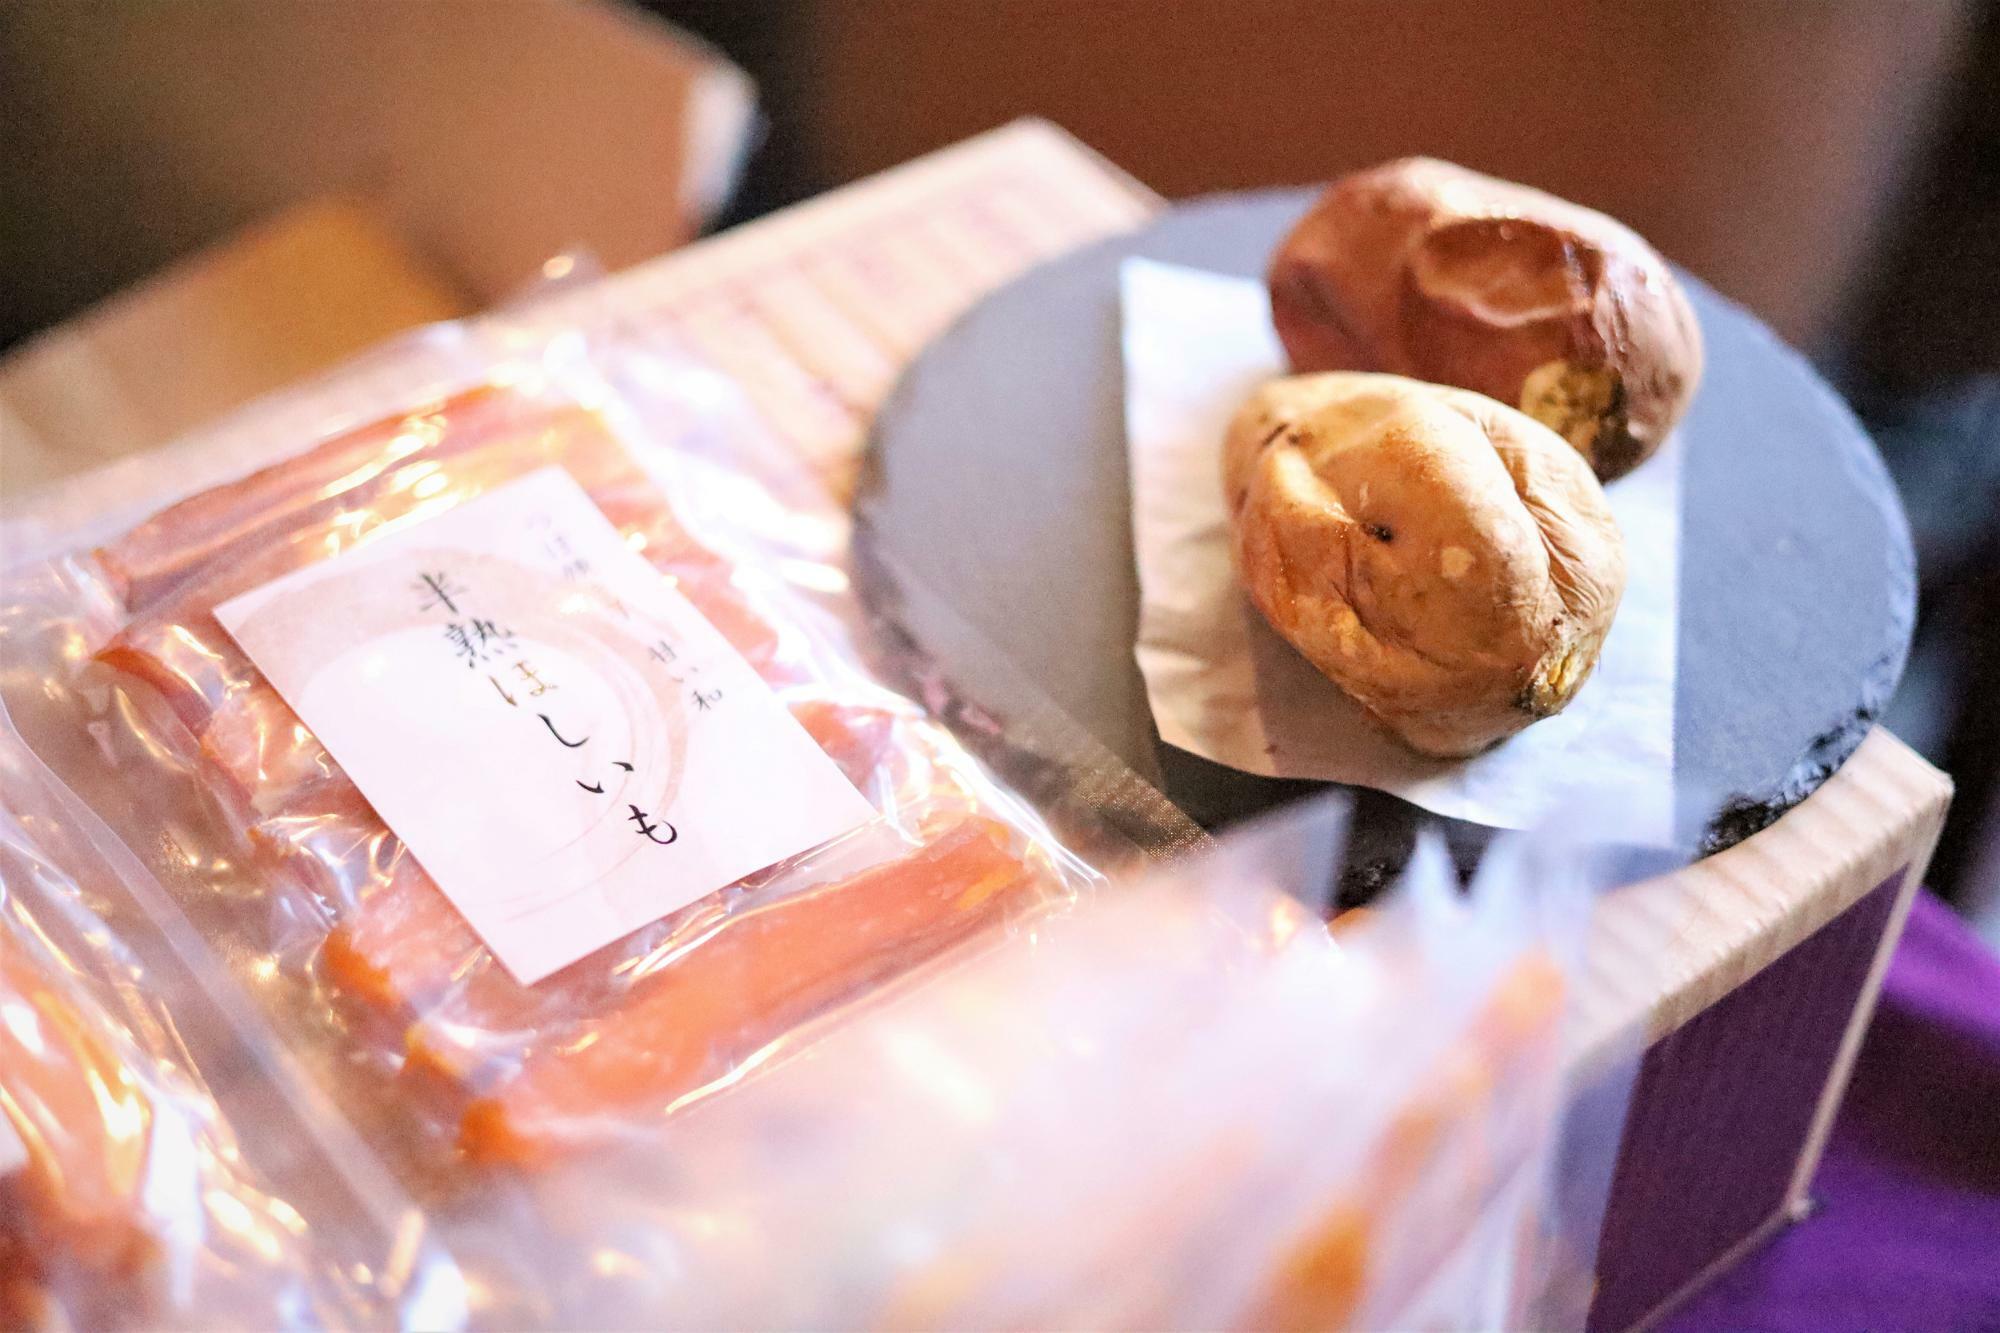 絶品壺焼き芋をまだ食べたことない方は大師公園前の「つぼ焼き芋 甘い和」まで。